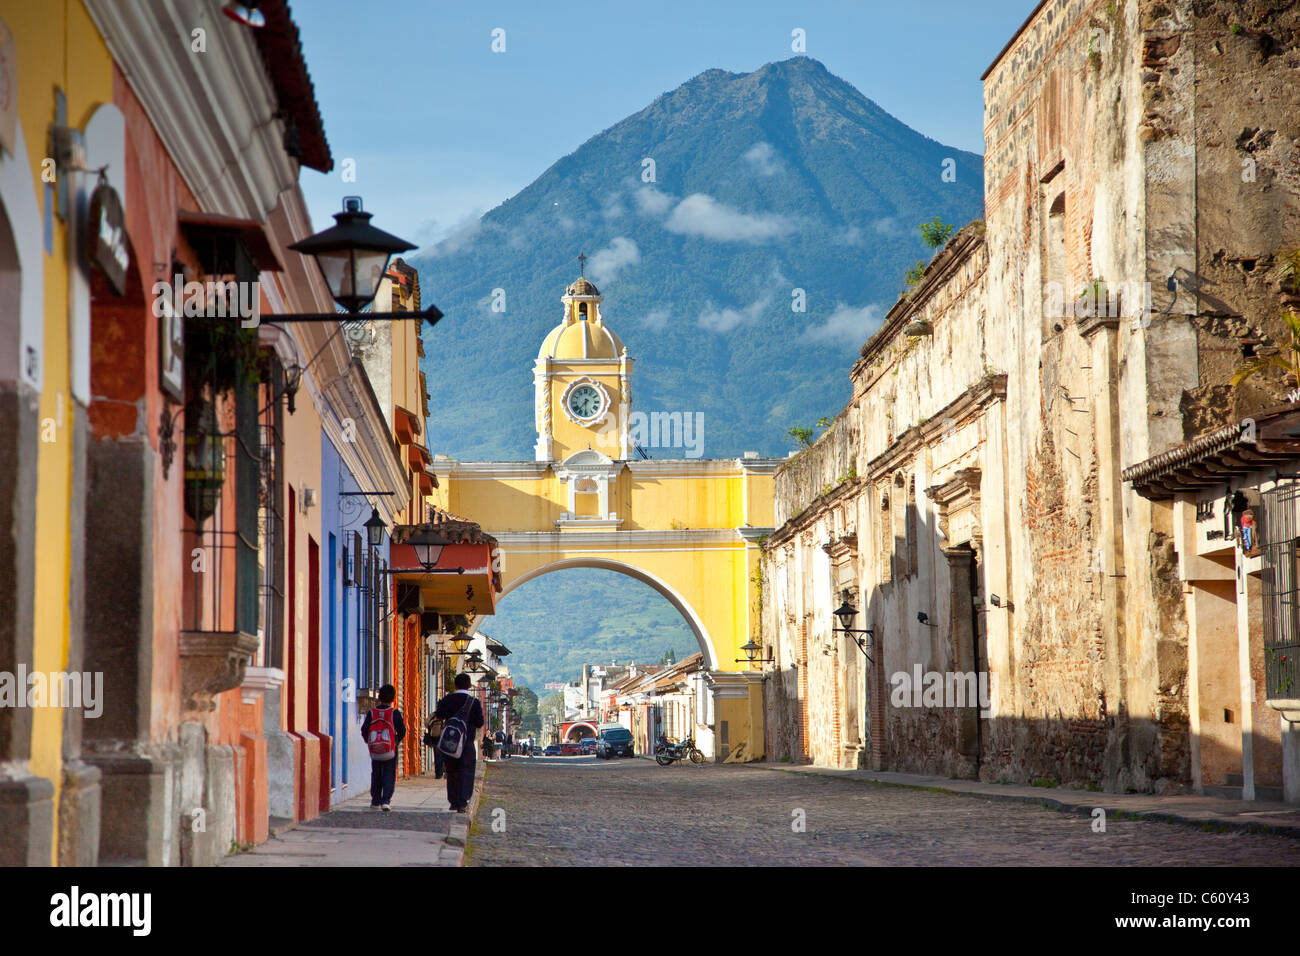 Volcán Agua, Arco de Santa Catalina, Calle del Arco, Antigua, Guatemala Foto de stock